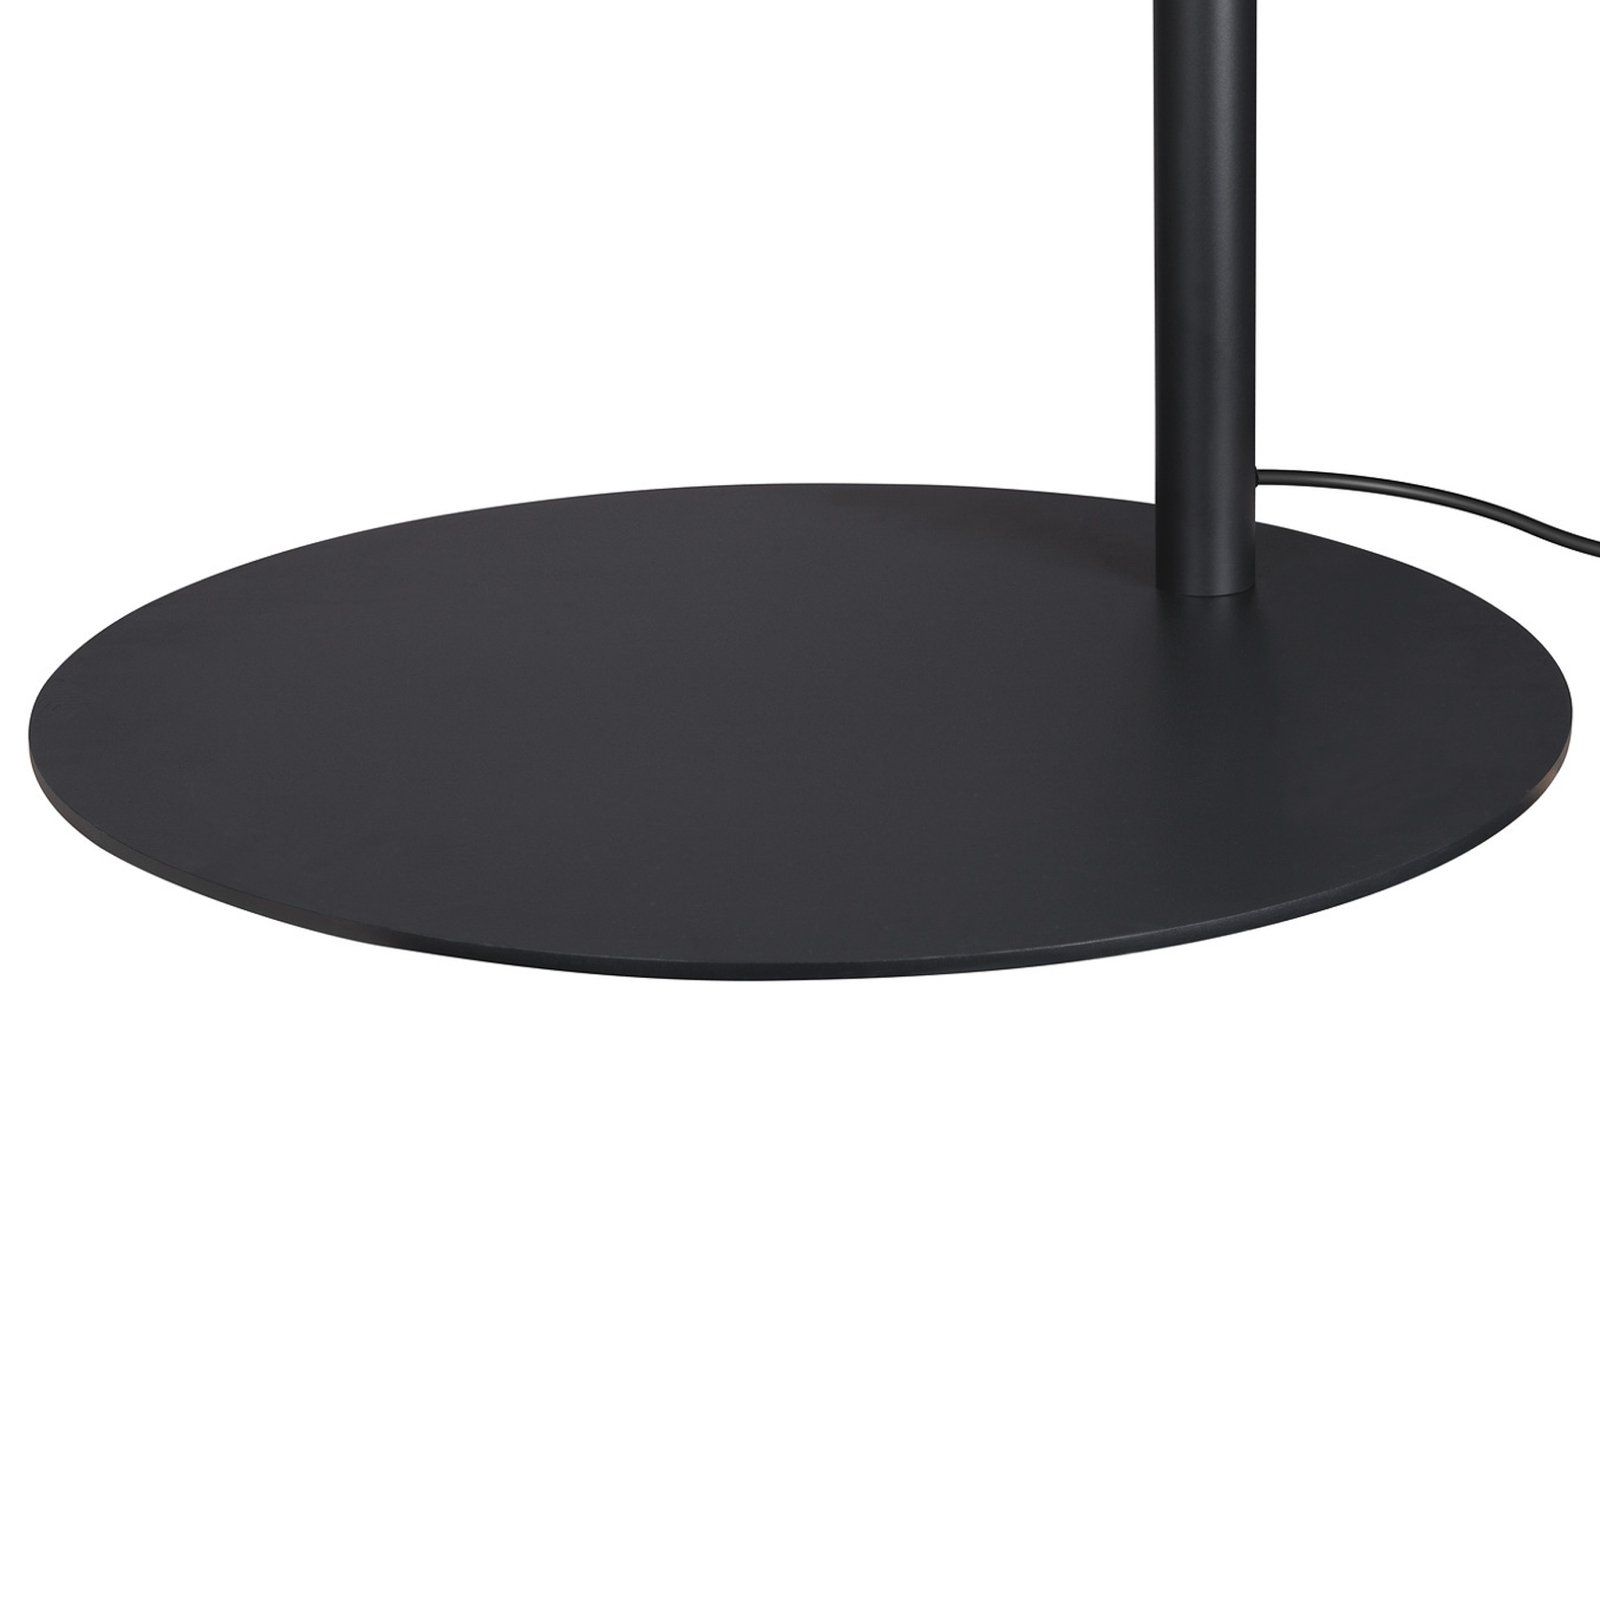 SLV LED floor lamp One Bow FL, black, steel, height 232 cm